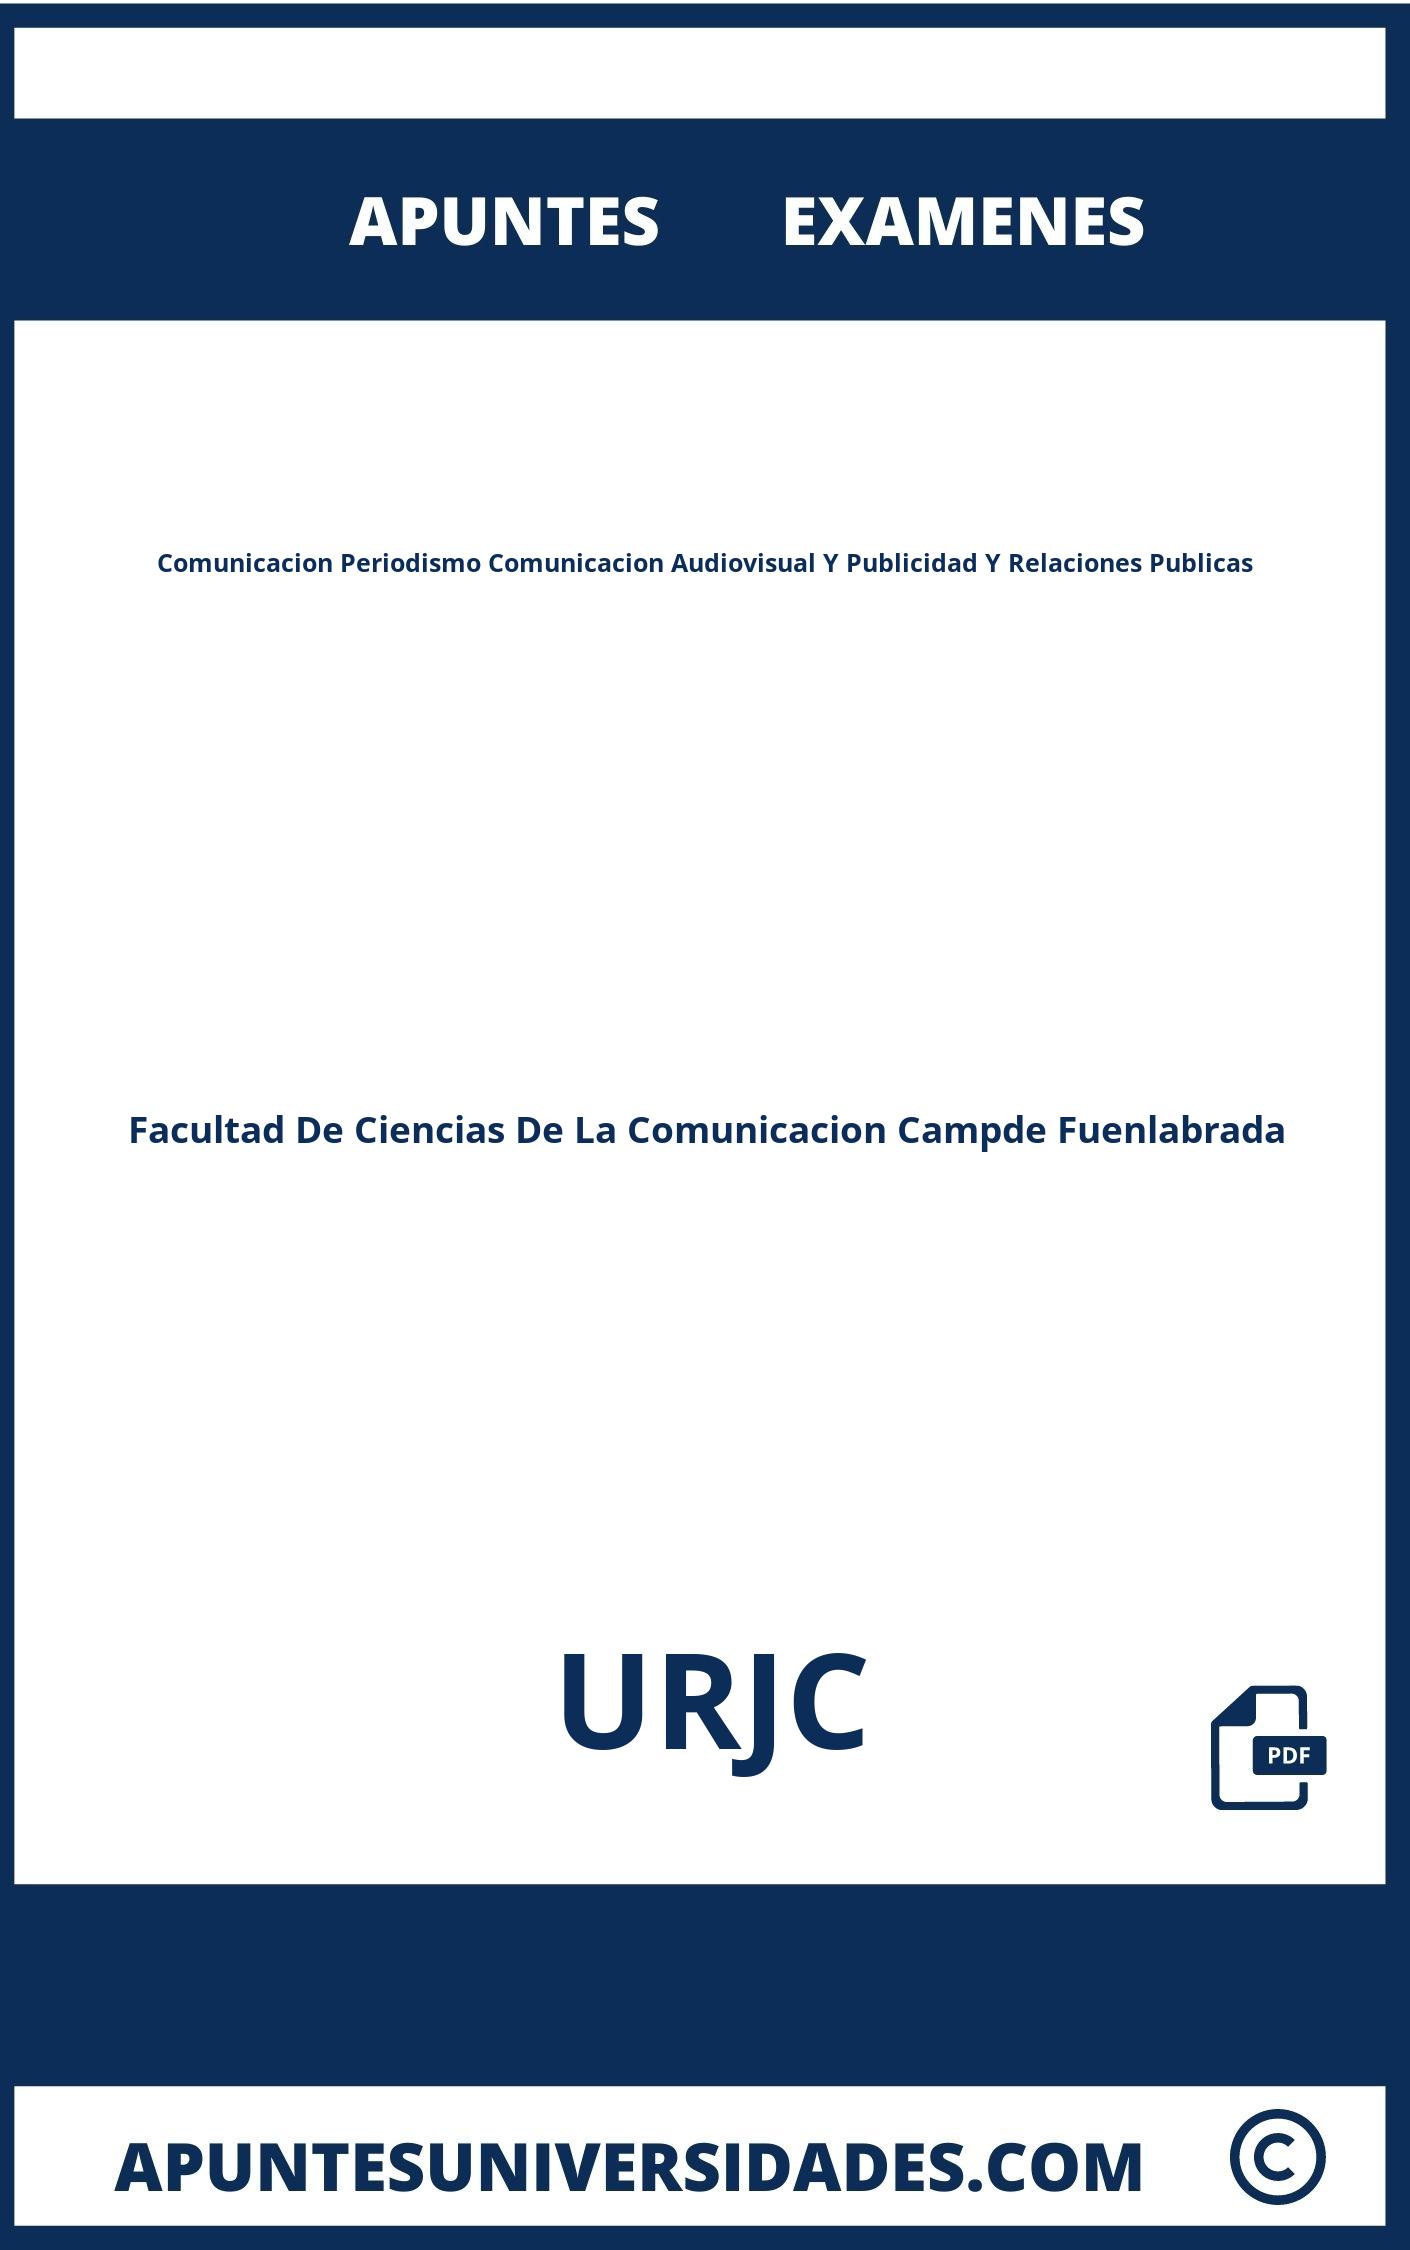 Examenes y Apuntes Comunicacion Periodismo Comunicacion Audiovisual Y Publicidad Y Relaciones Publicas URJC